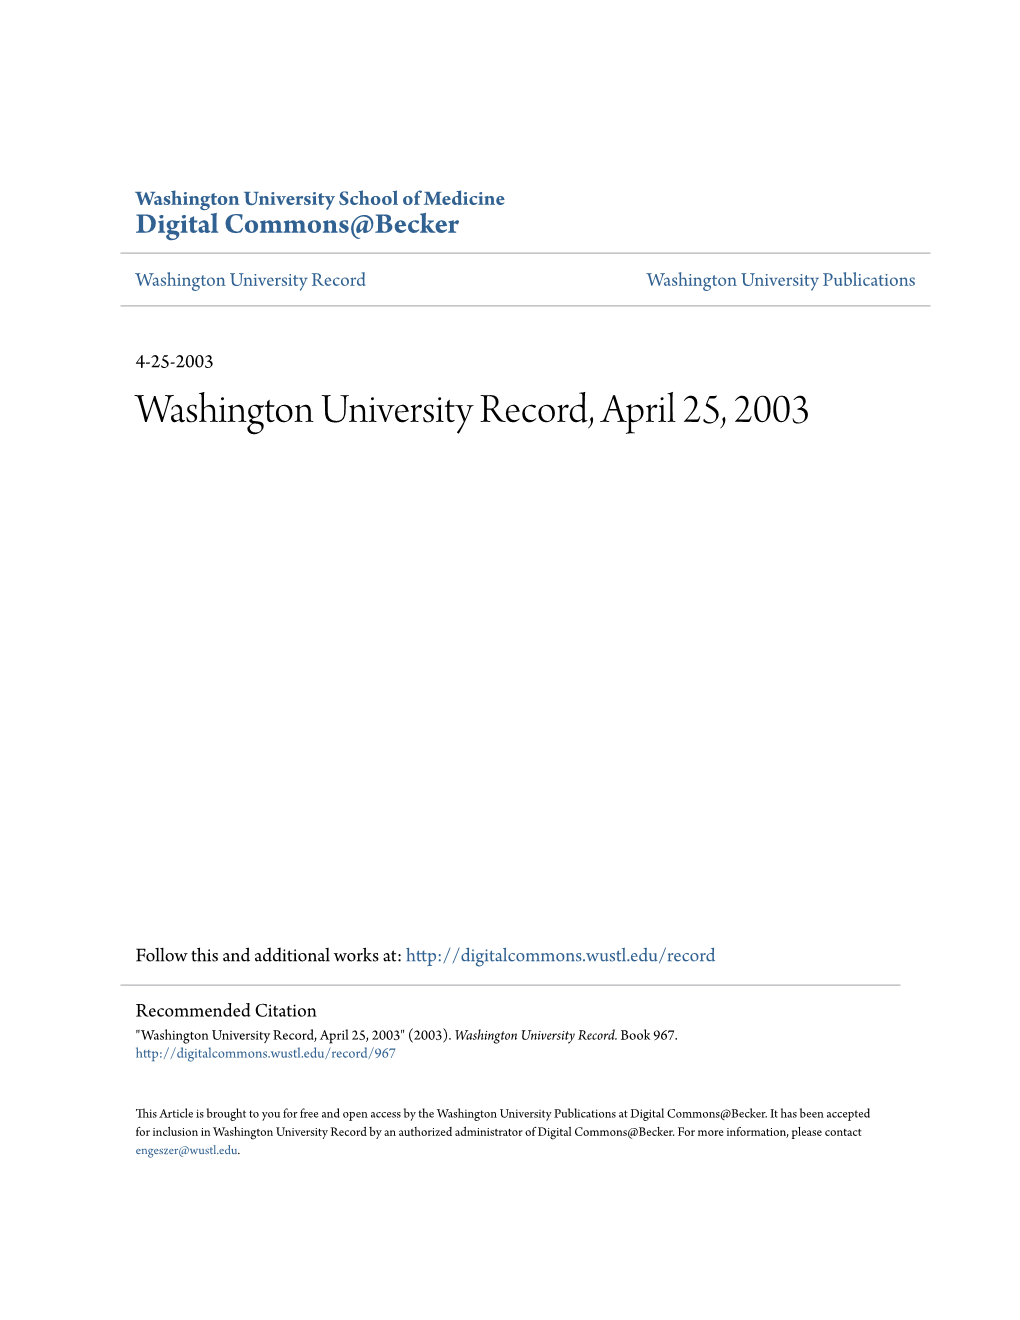 Washington University Record, April 25, 2003